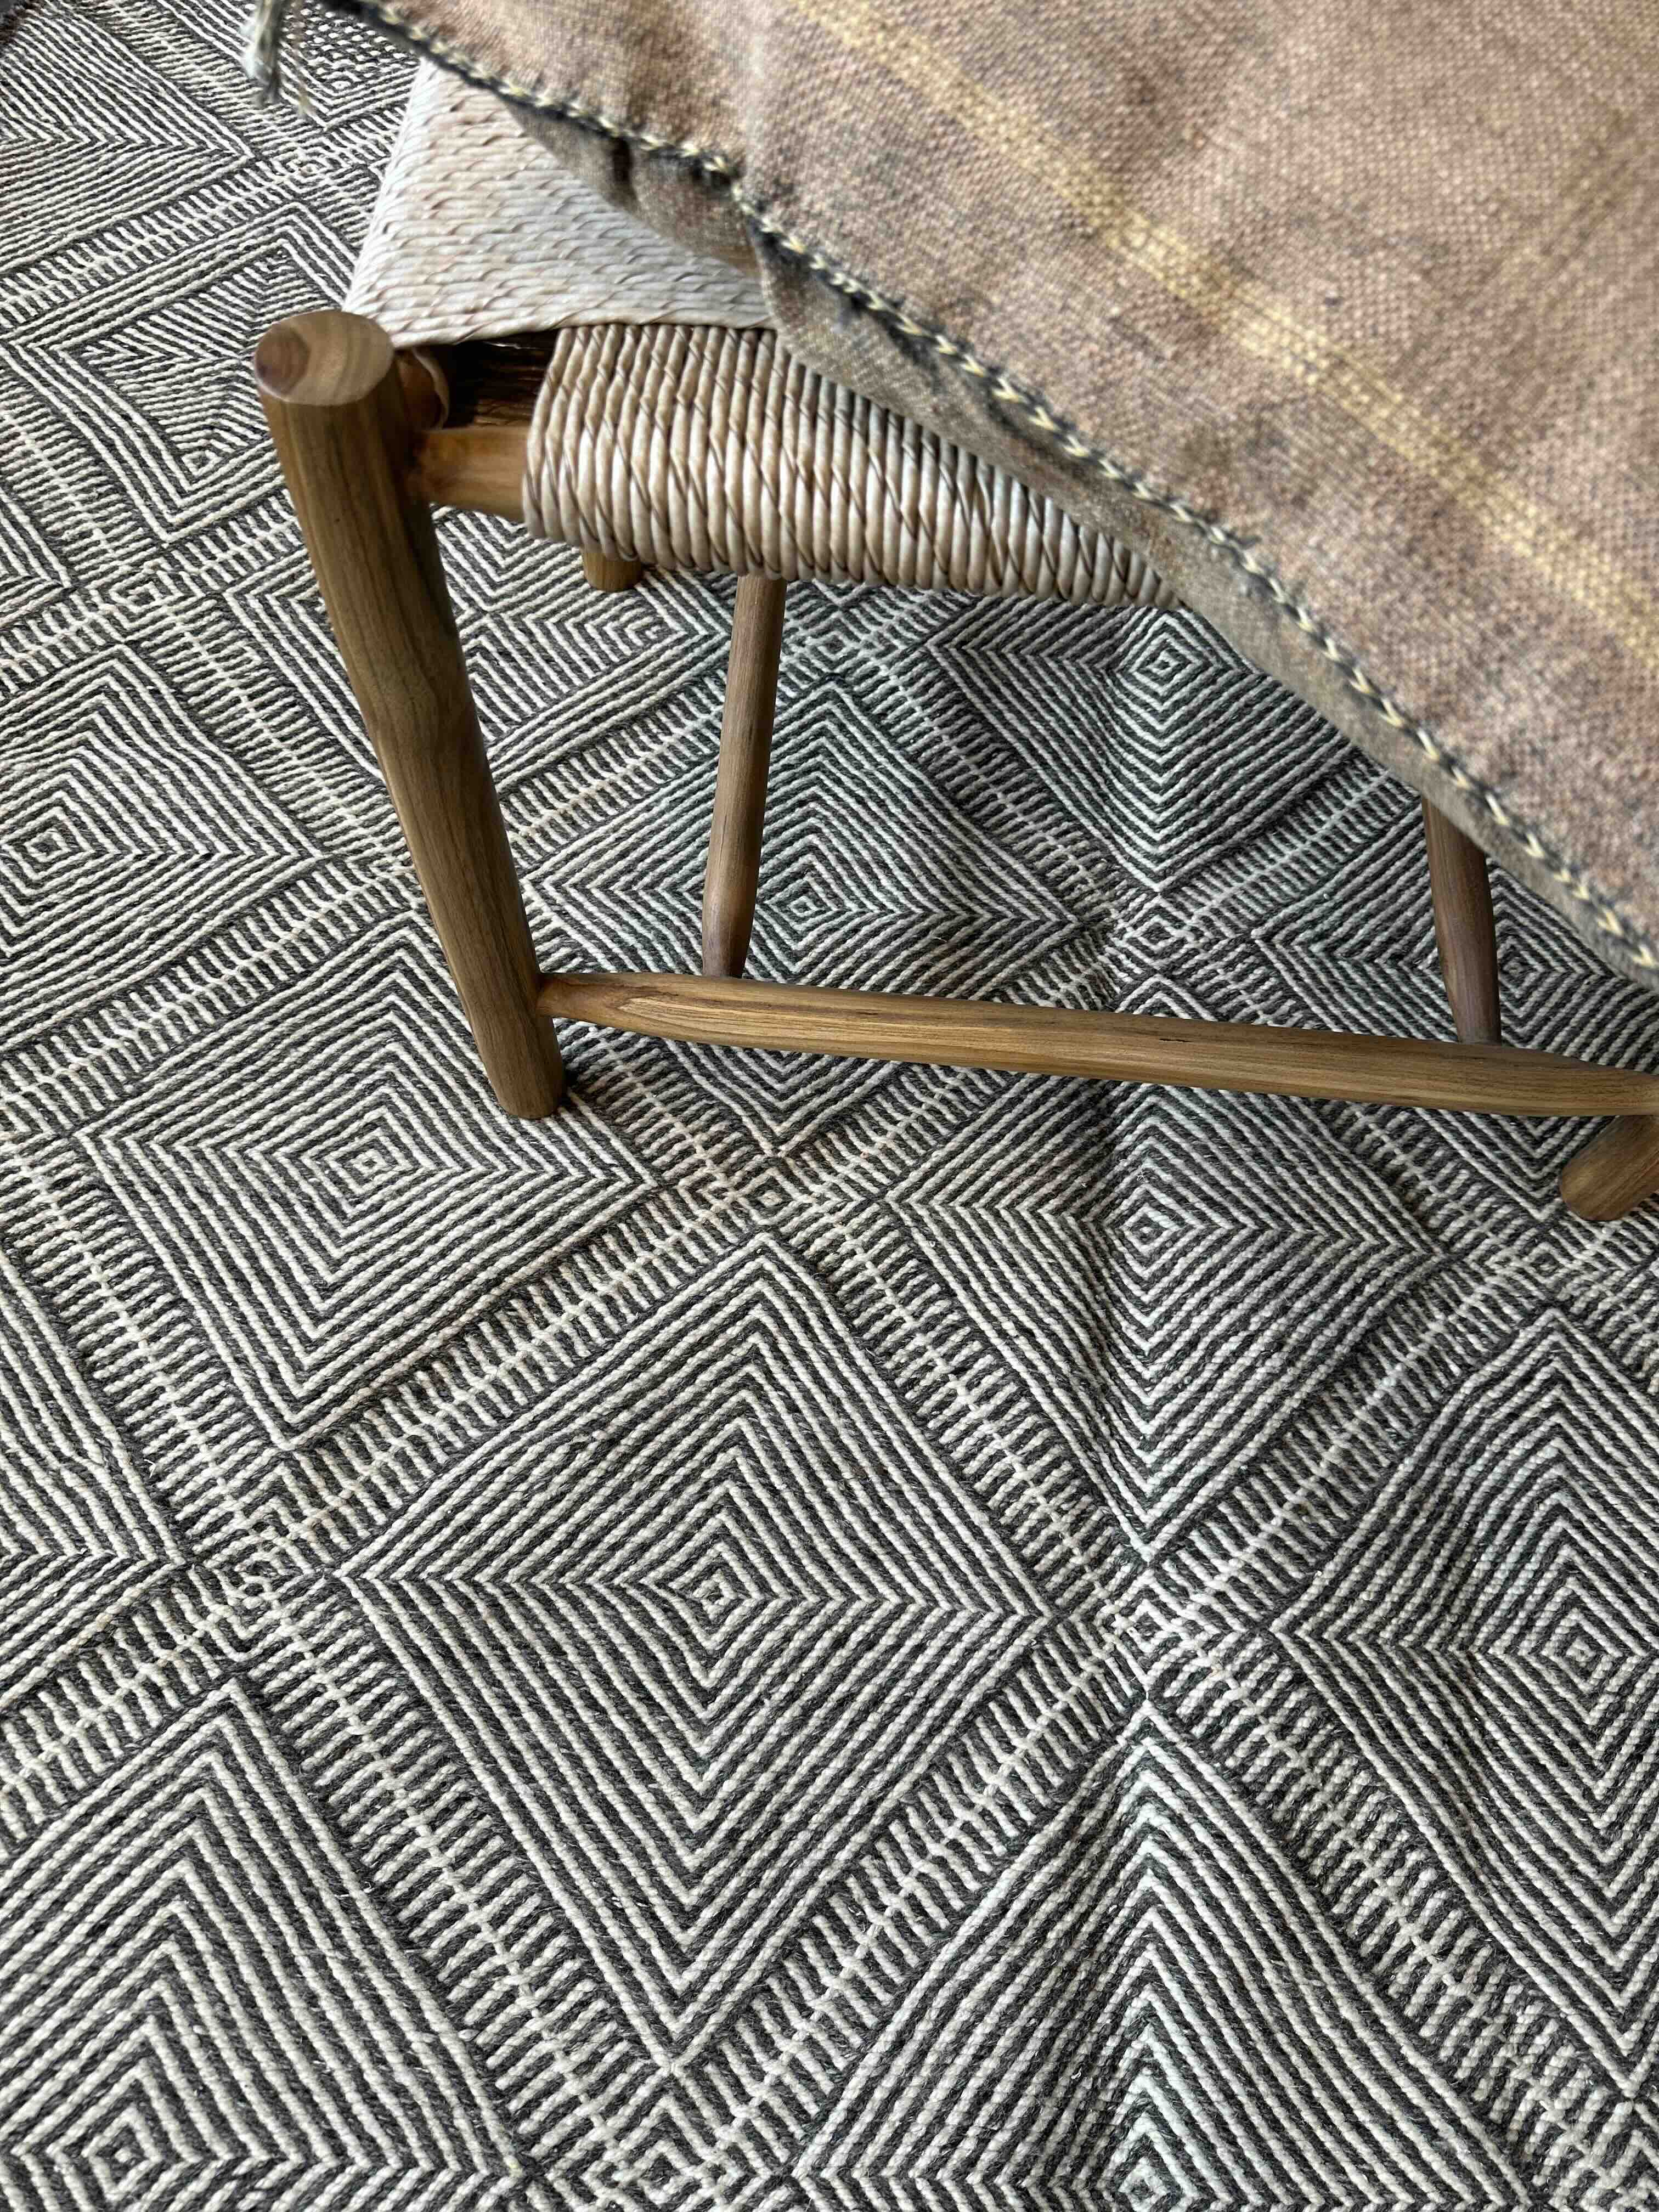 Marrokansk uld gulvtæppe i Mørkegrå og hvid farver.